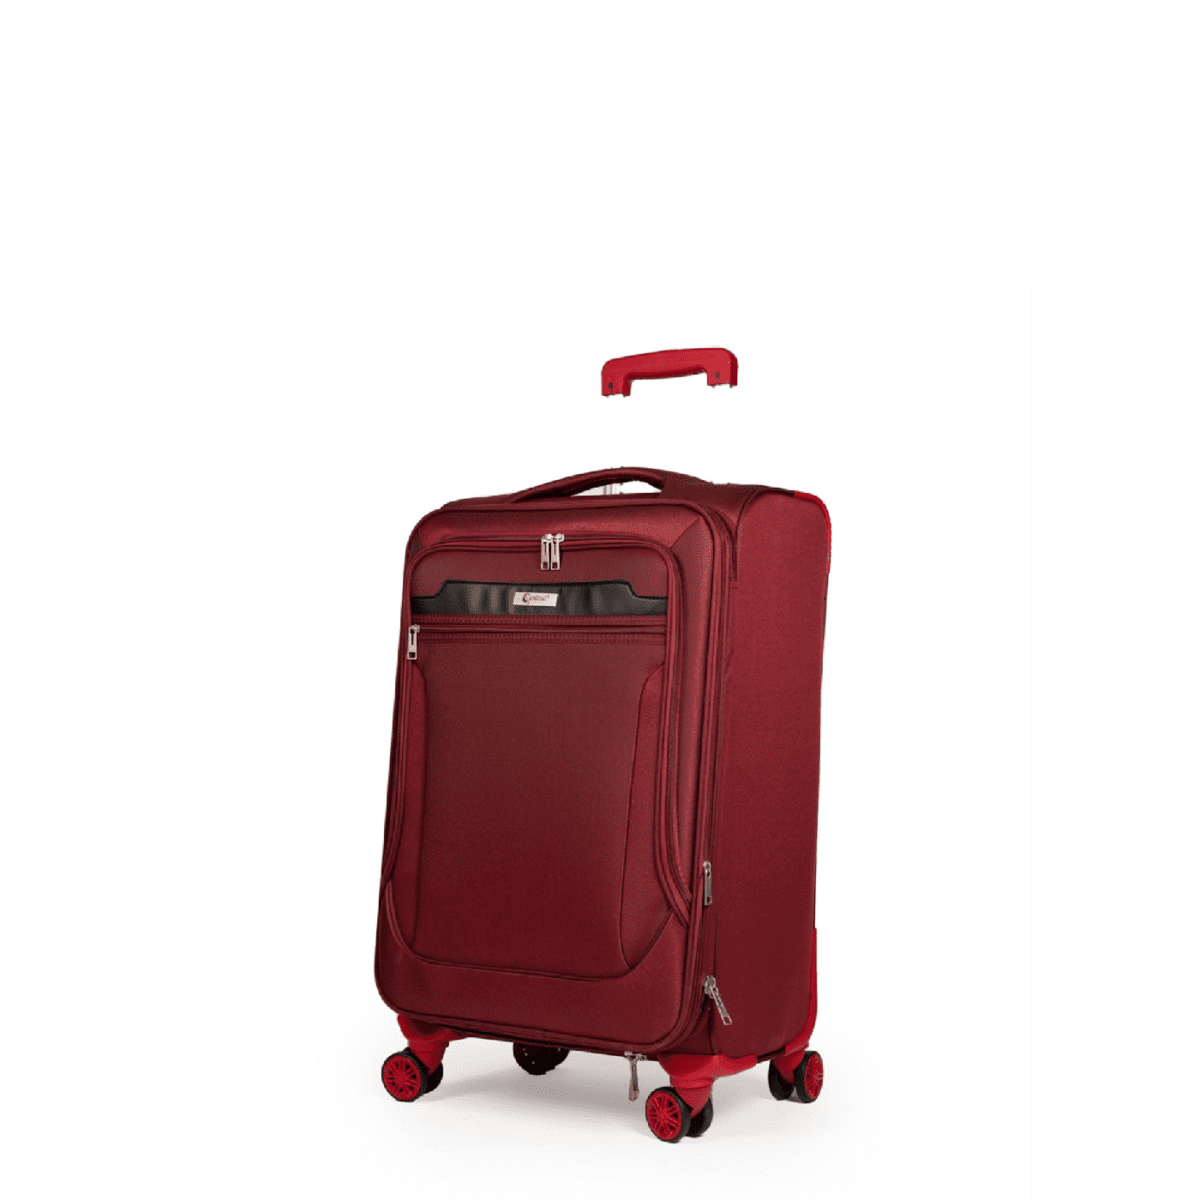 Βαλίτσα χειραποσκευή με διπλά ροδάκια , tsa lock από υφασμάτινο υλικό σε μπορντό χρώμα , επεκτάσιμη .